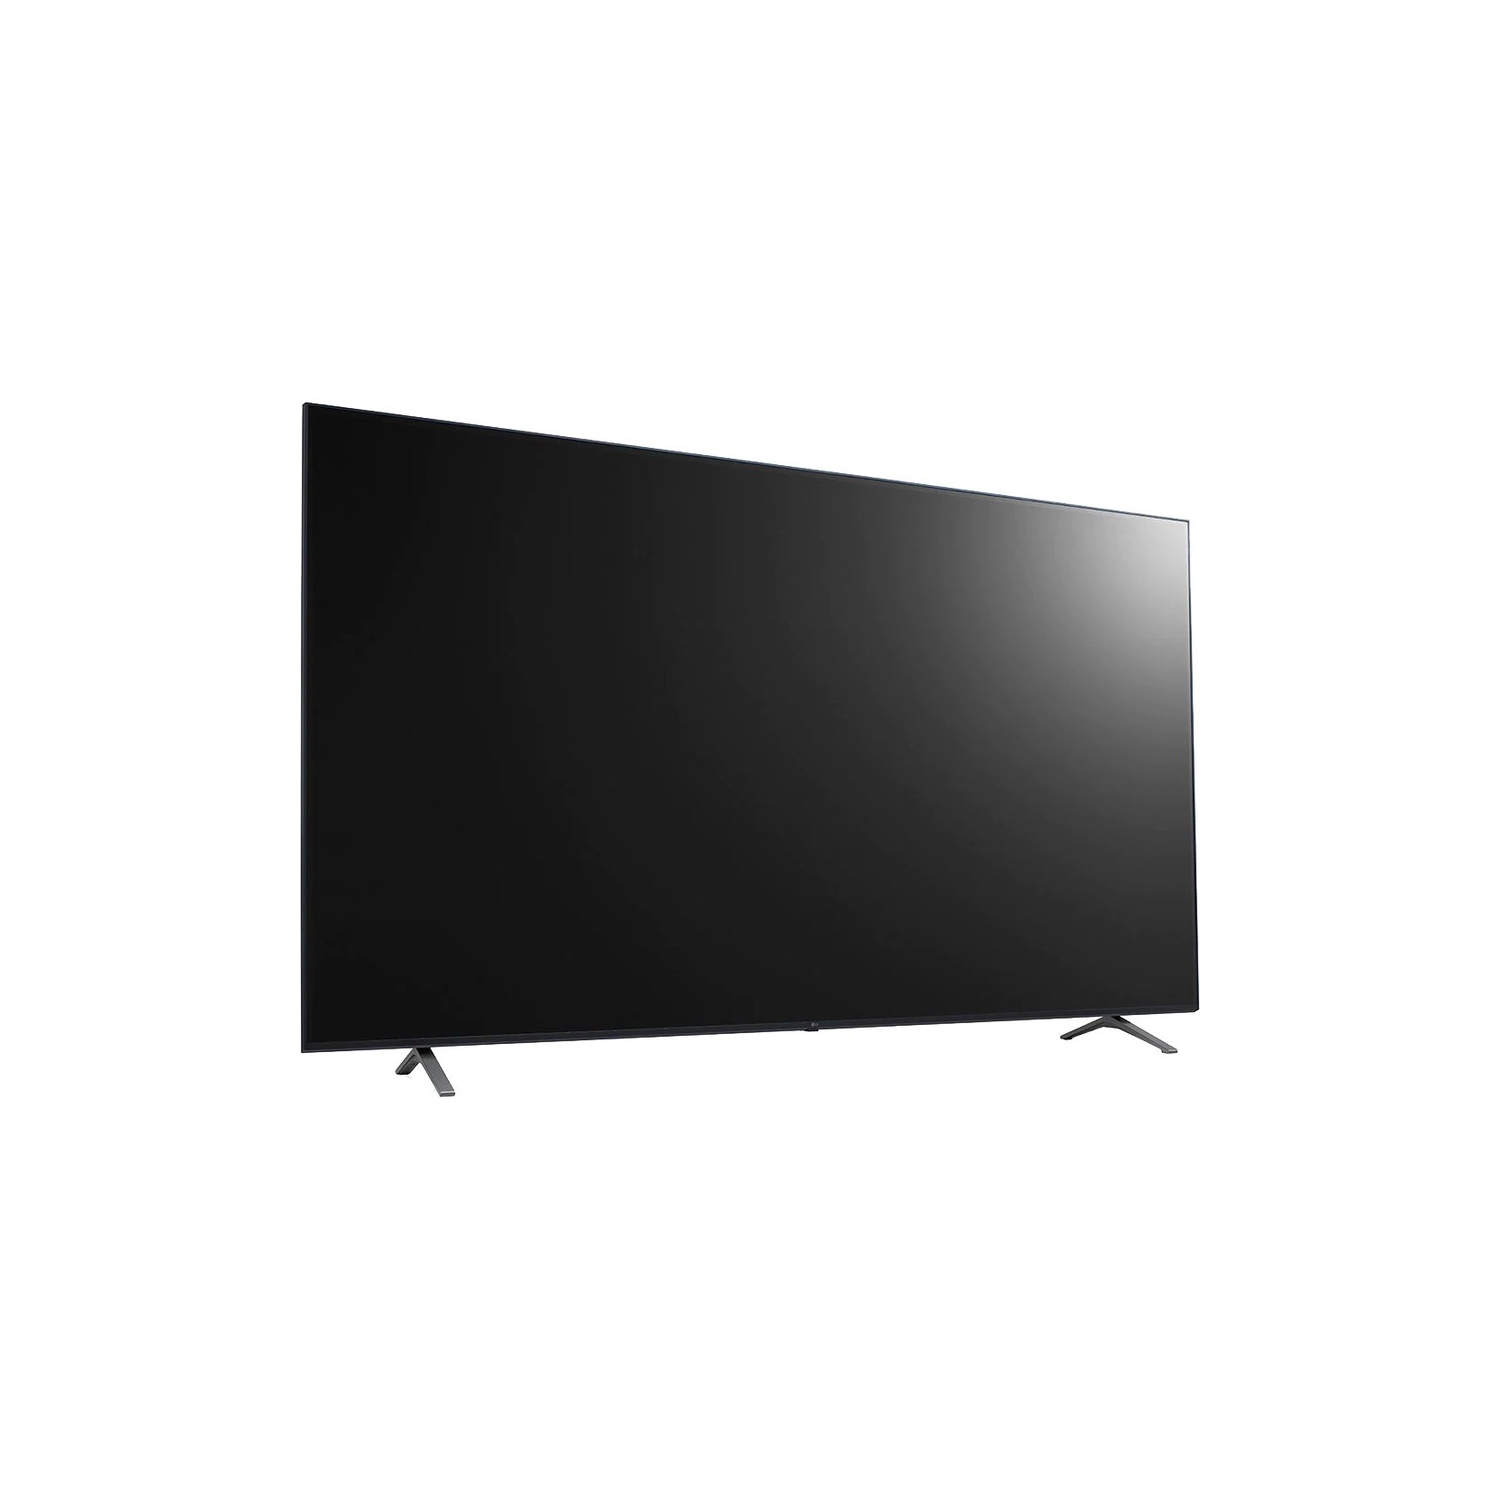 LG 55" 4K UHD HDR LED TV WebOS Smart TV (55UR640S9UD) - Black